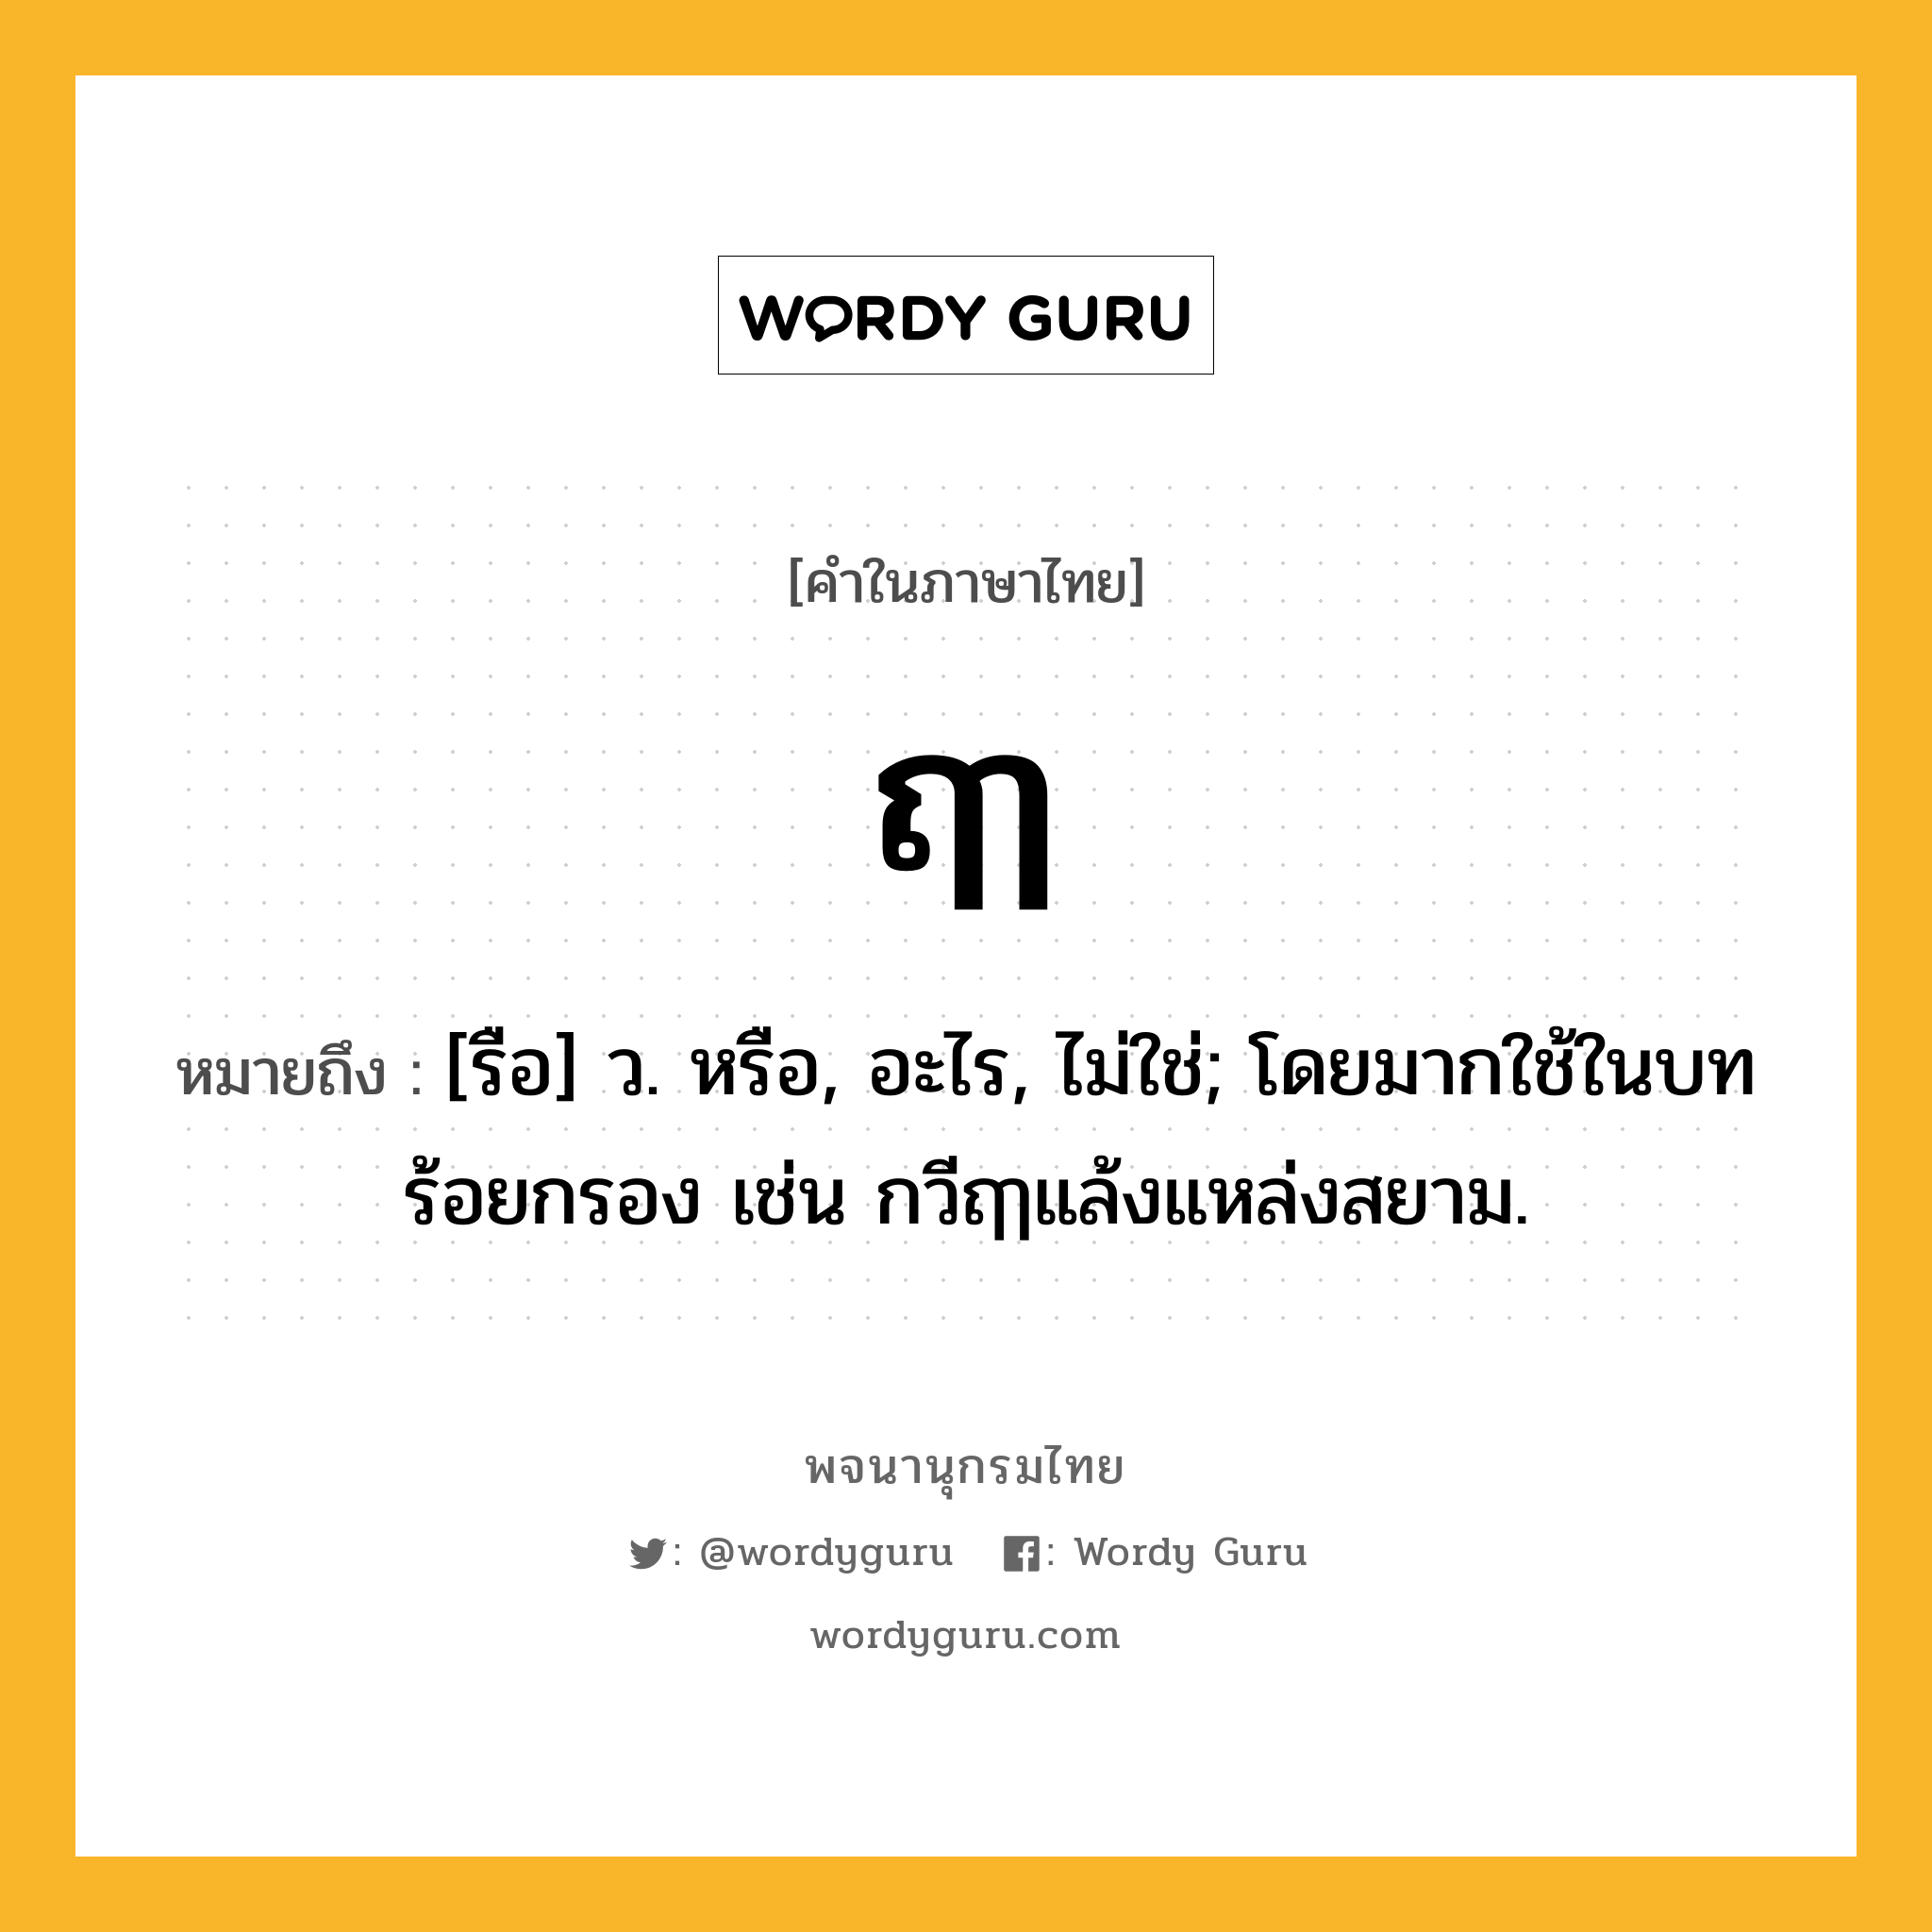 ฤๅ หมายถึงอะไร?, คำในภาษาไทย ฤๅ หมายถึง [รือ] ว. หรือ, อะไร, ไม่ใช่; โดยมากใช้ในบทร้อยกรอง เช่น กวีฤๅแล้งแหล่งสยาม.